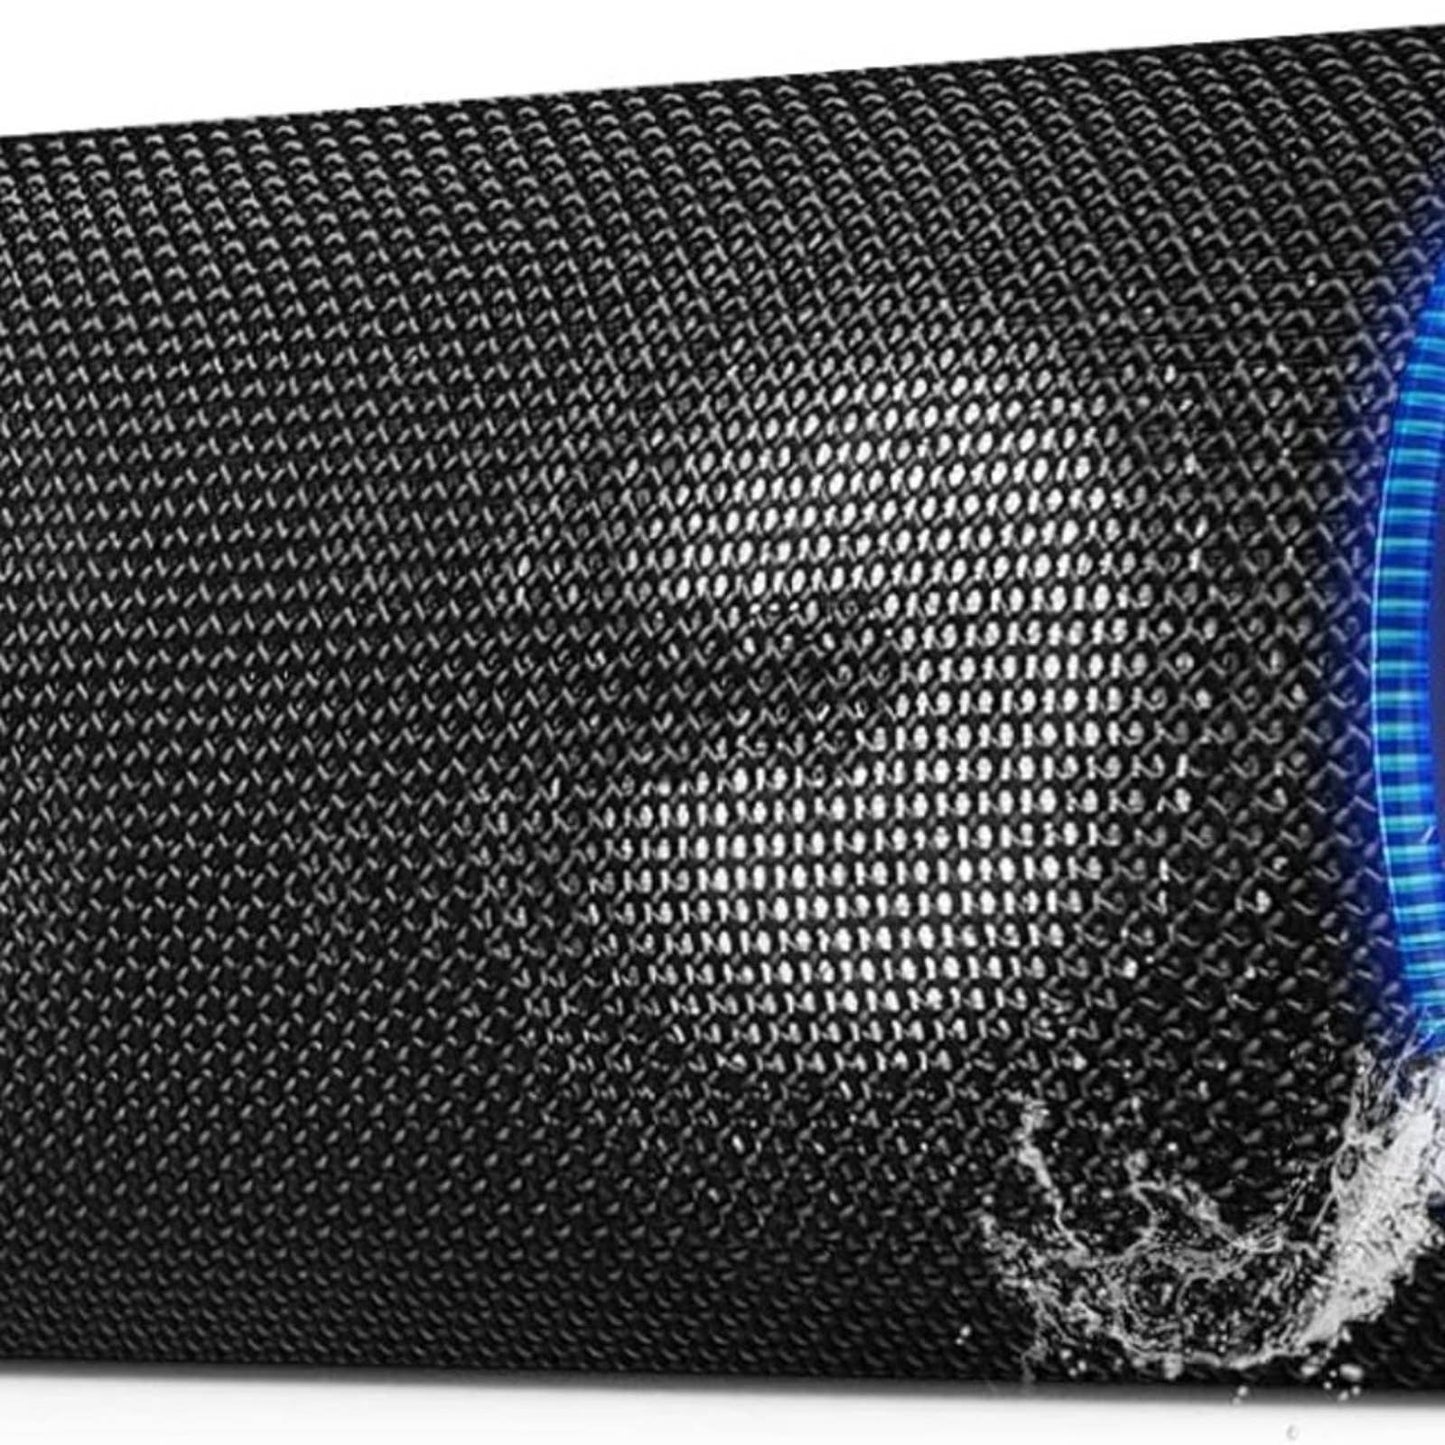 EDUPLINK Bluetooth Speakers 40 Watt Powerful Louder Volume Deep Bass